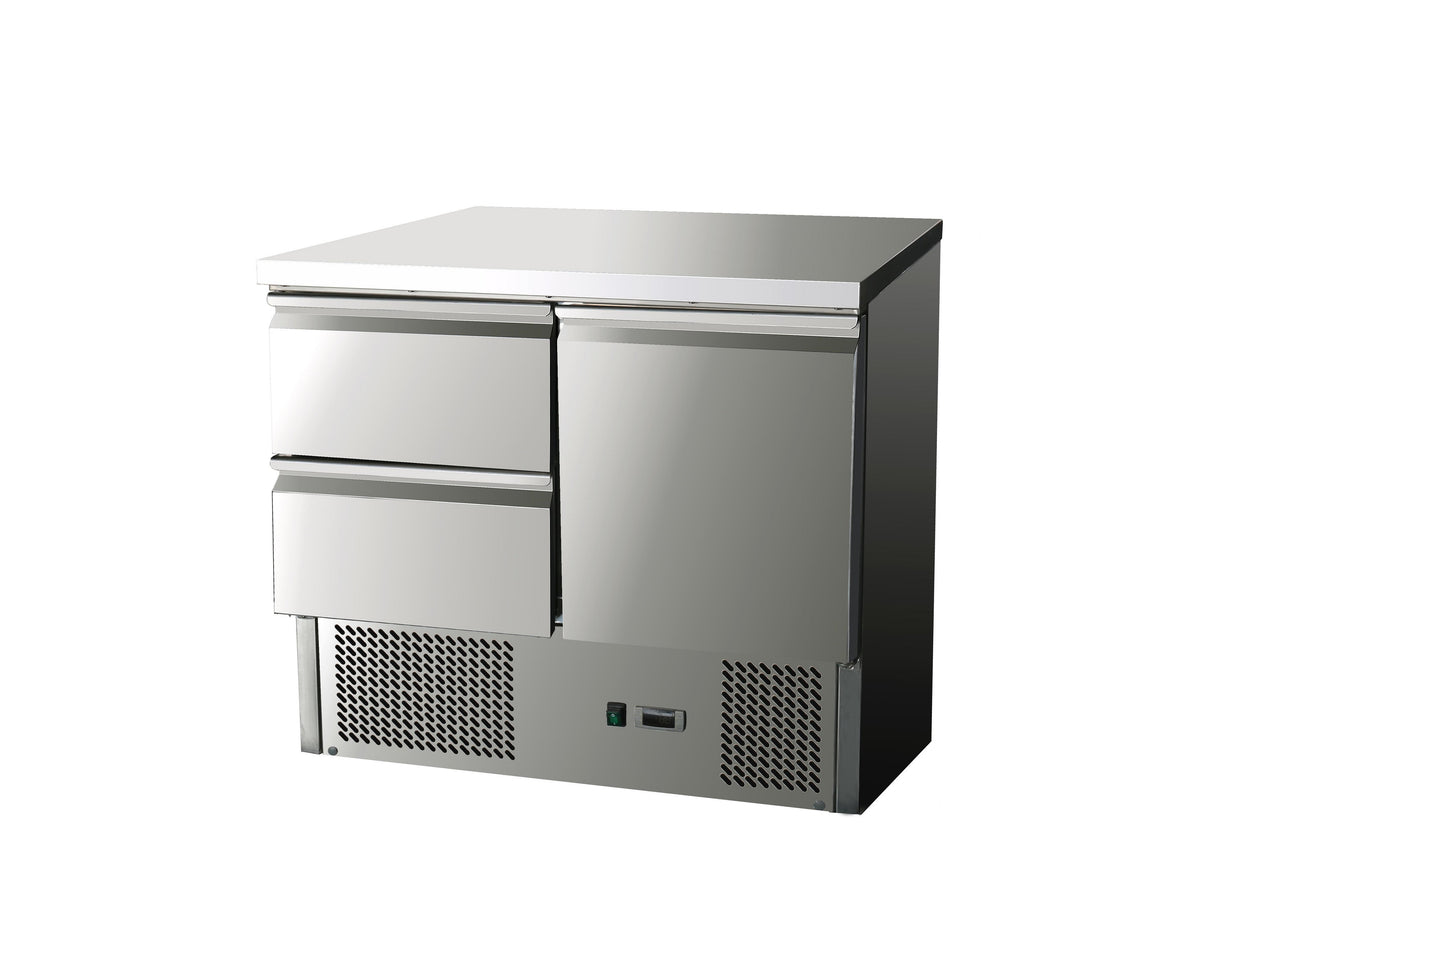 THS901-2D - Saladette réfrigérée 2 tiroirs ,900 x 700 x 870 mm